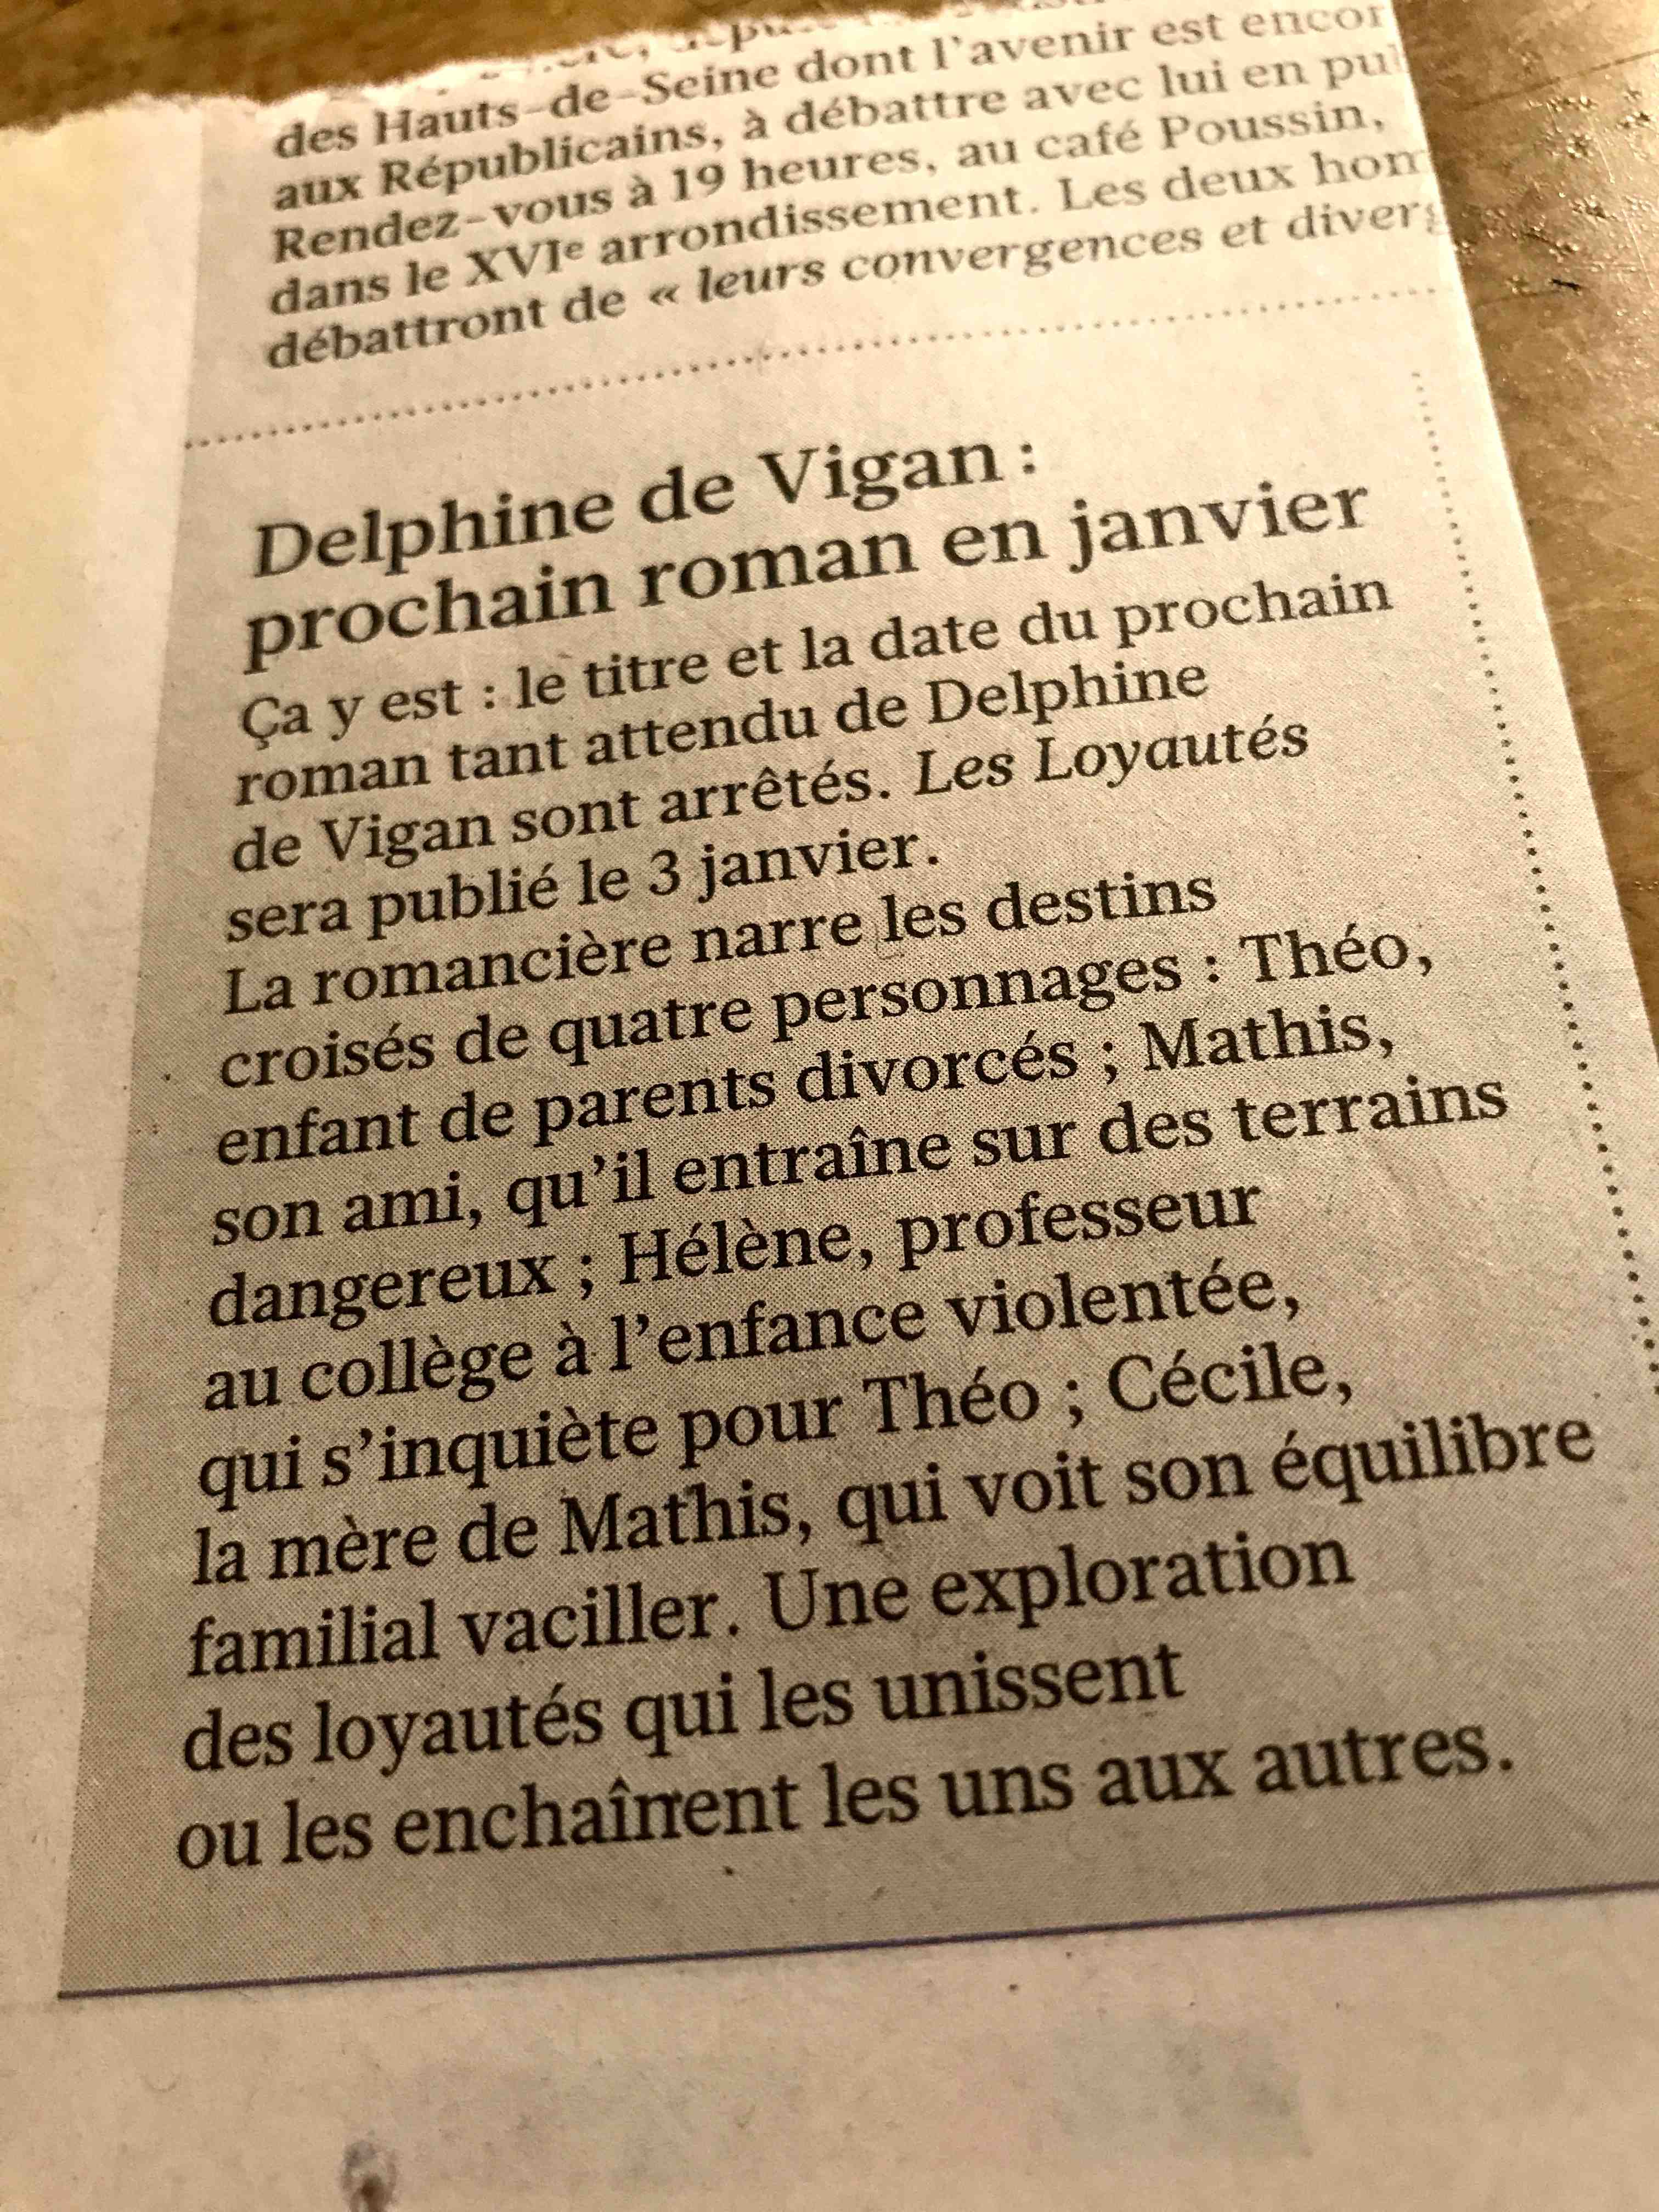 Nouveau de VIgan.